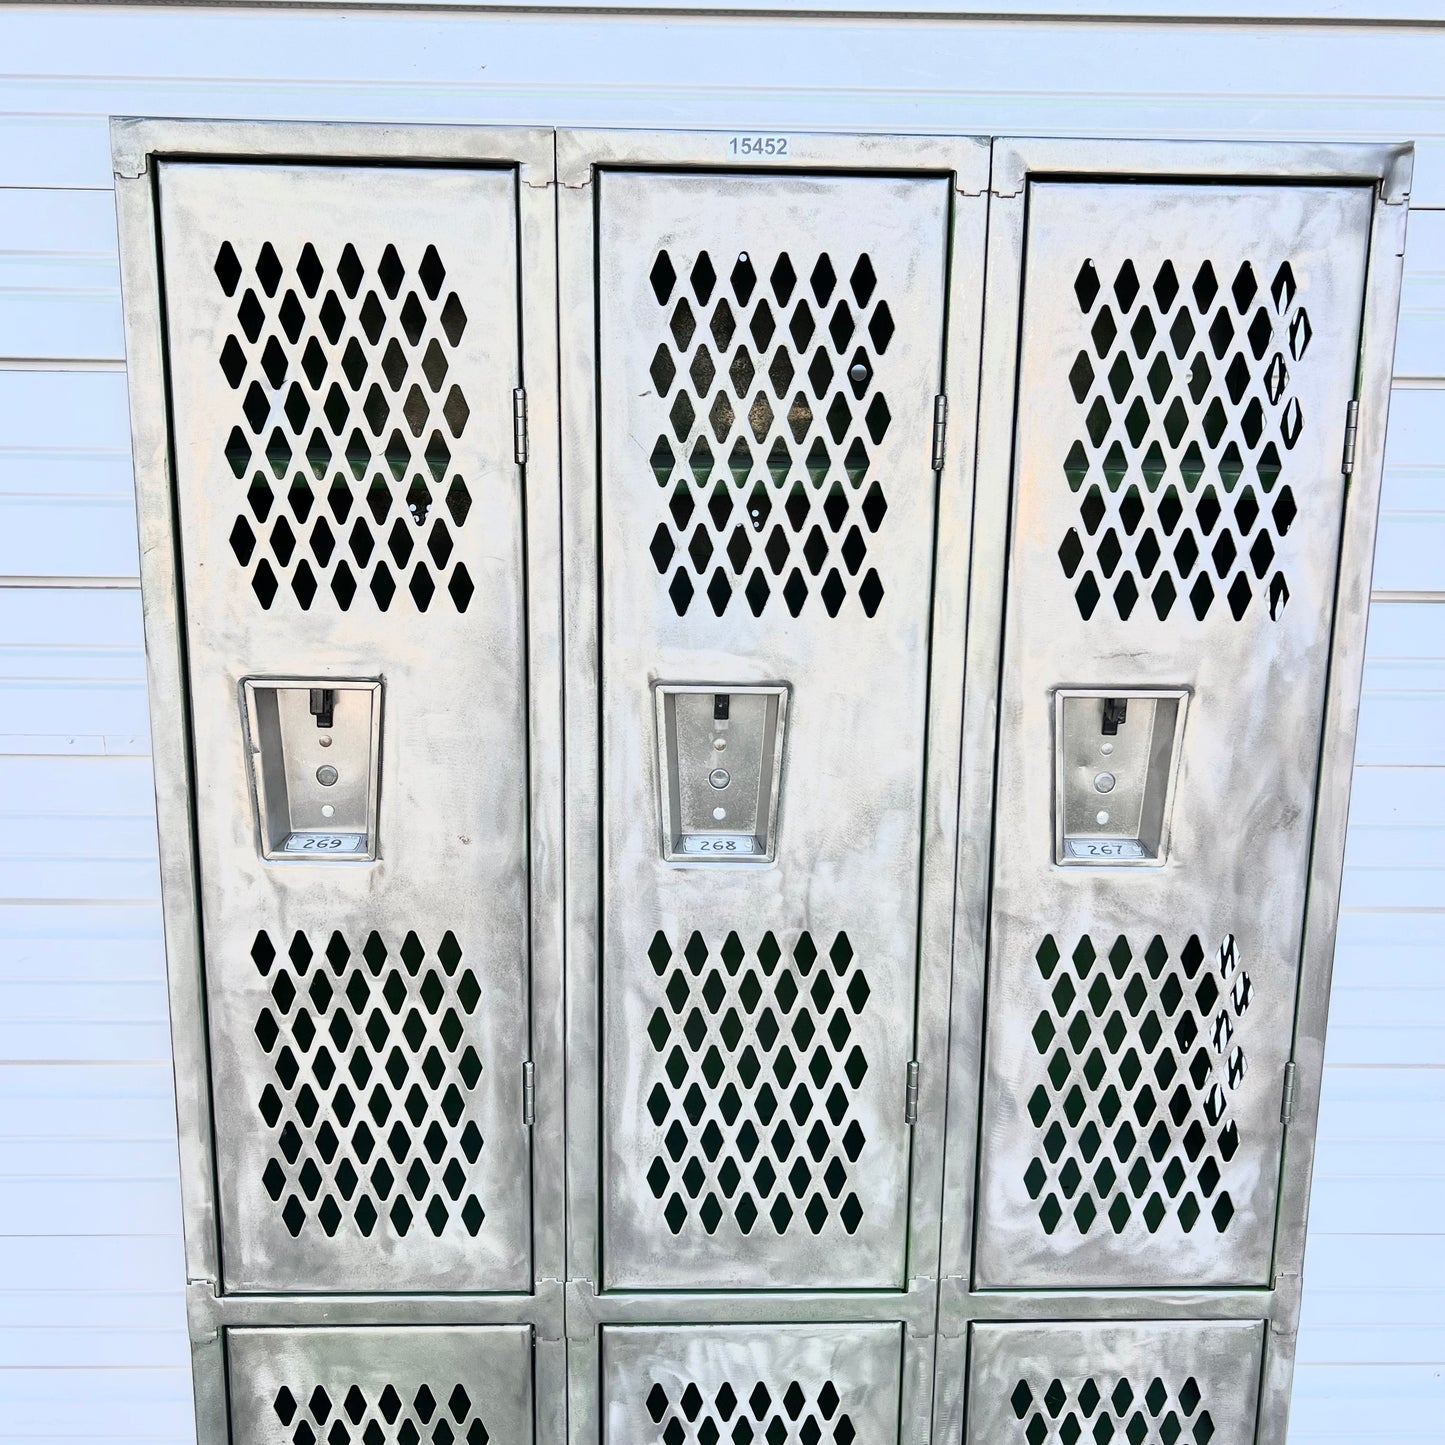 Stripped Metal Lockers